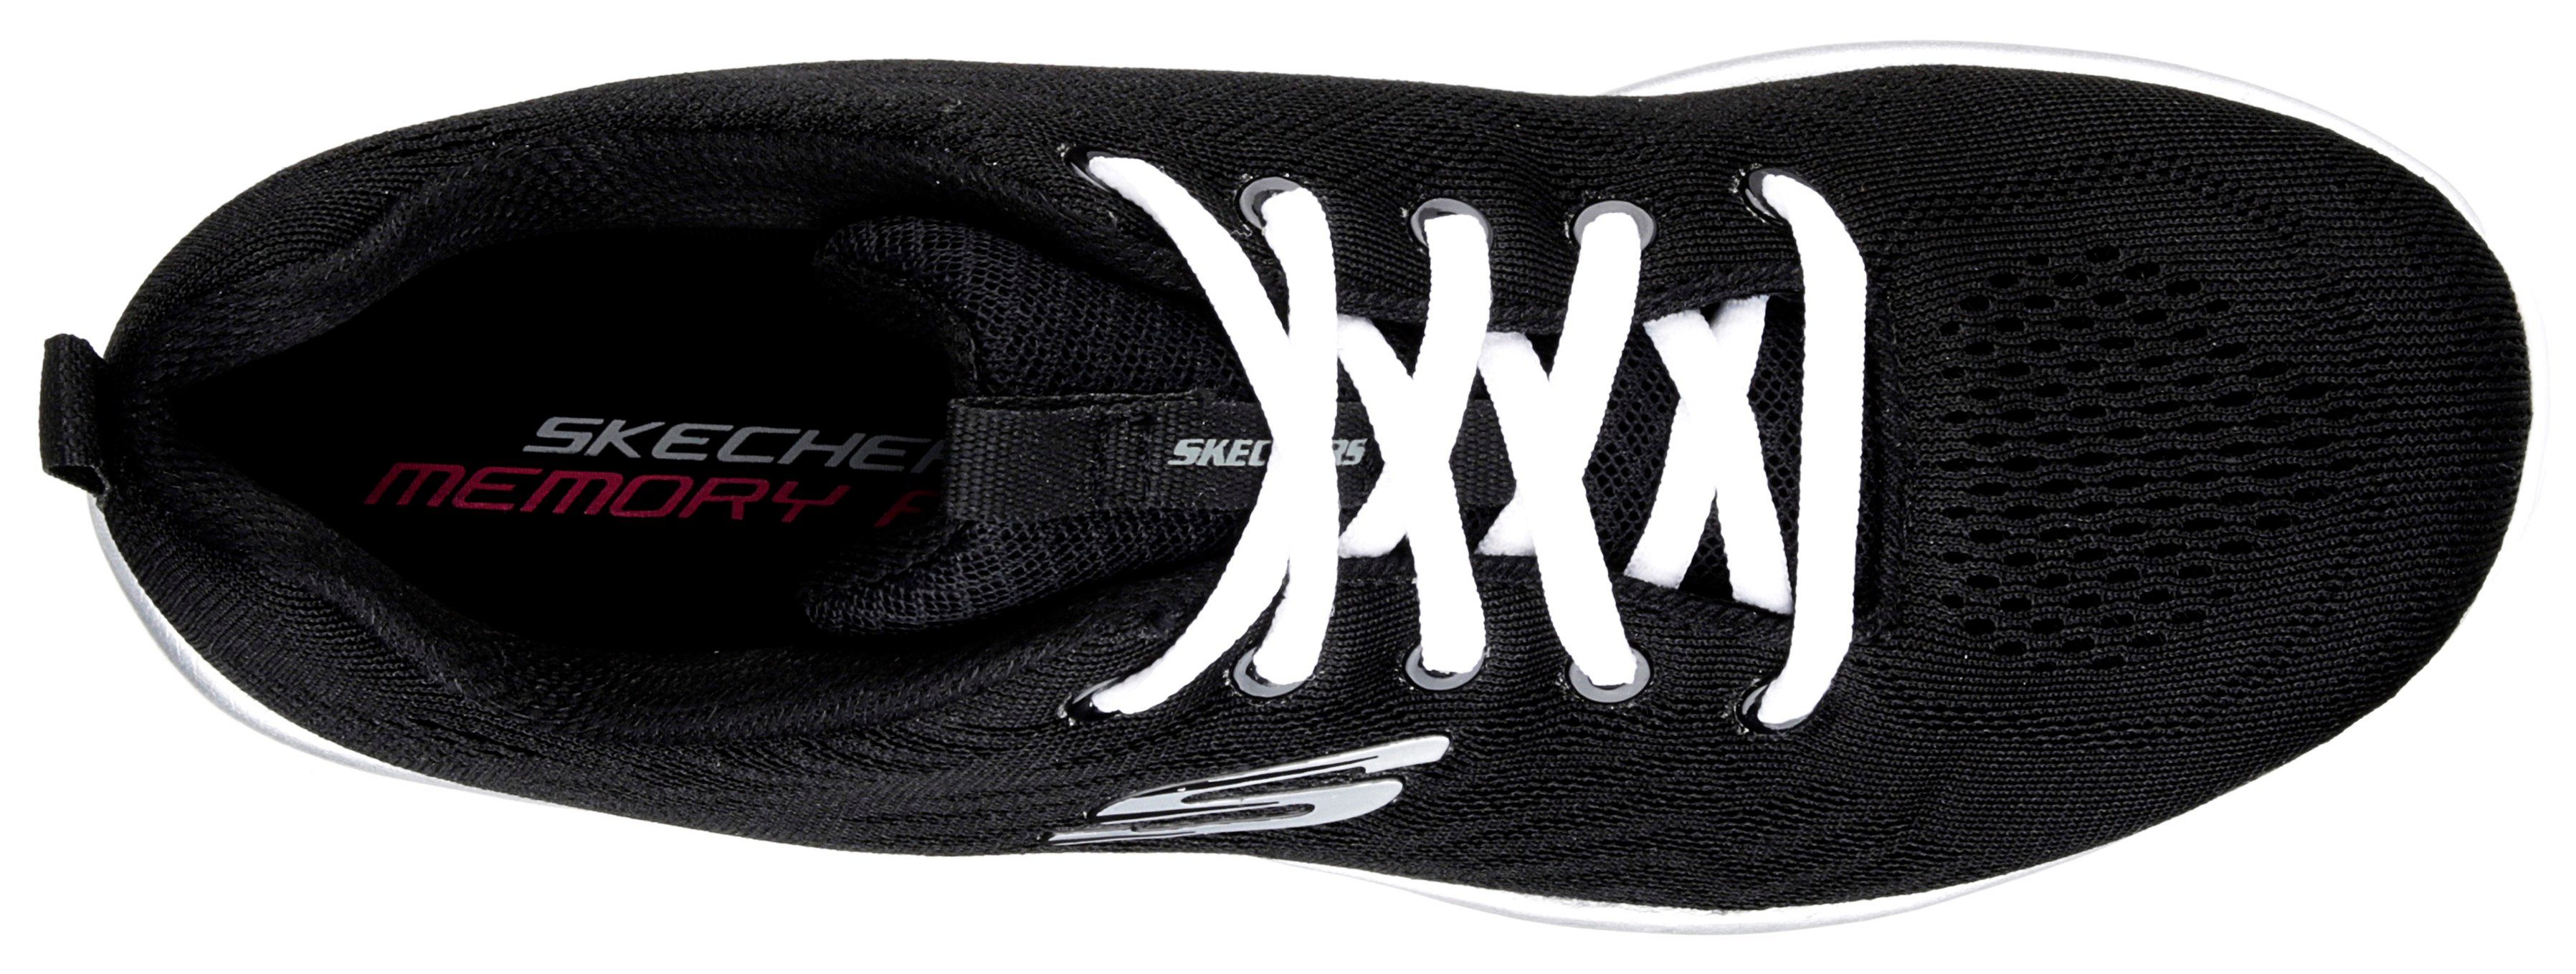 Get schwarz-weiß Sneaker Graceful Connected Foam Dämpfung Memory Skechers durch mit -